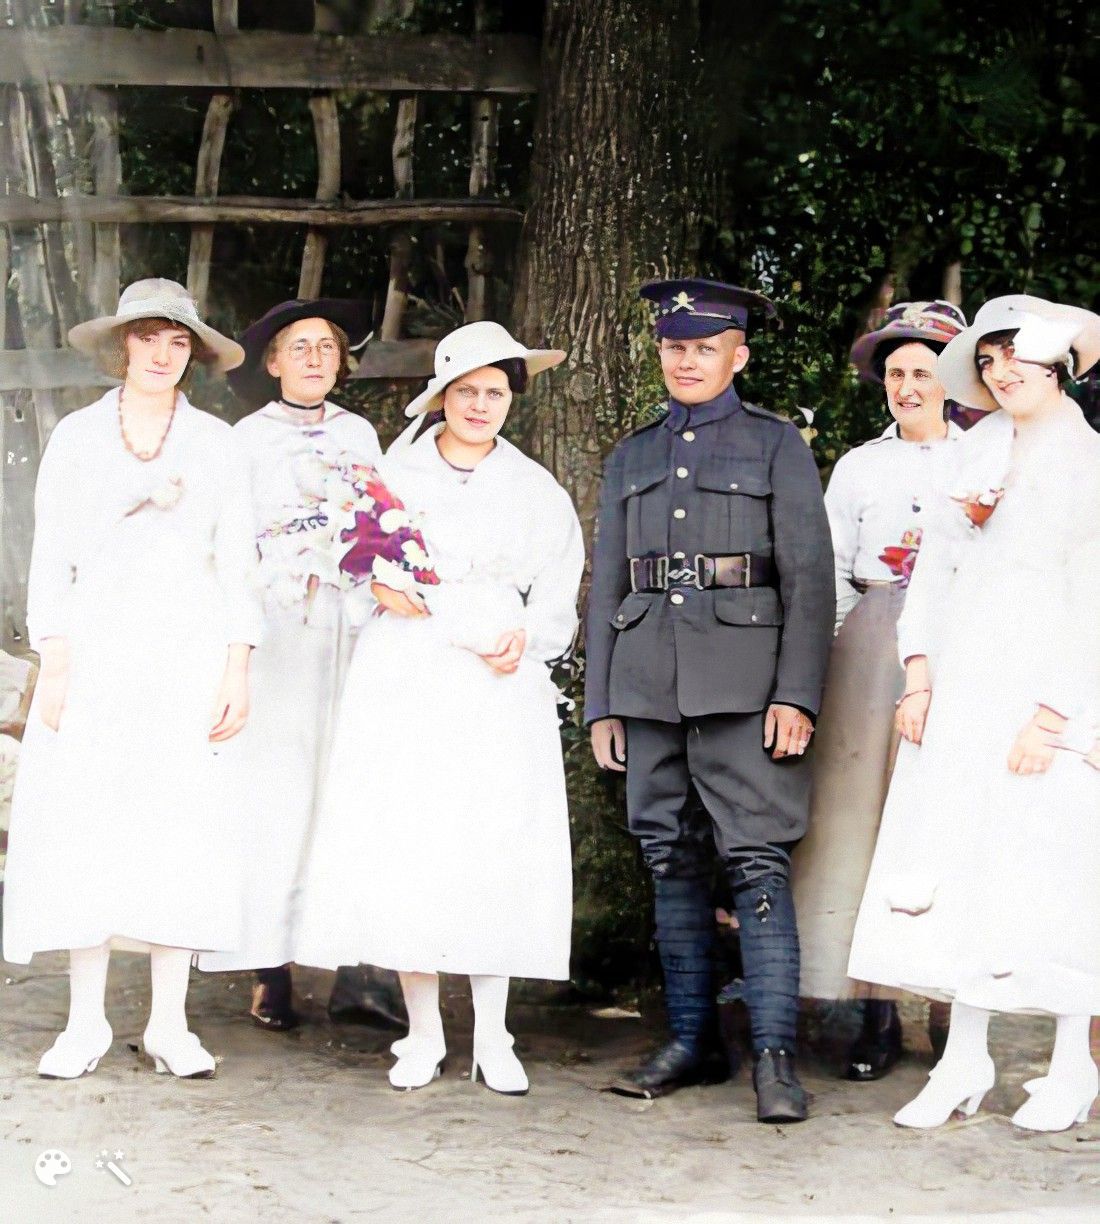 Maud und Bert an ihrem Hochzeitstag im Jahr 1917. Foto koloriert und verbessert mit MyHeritage